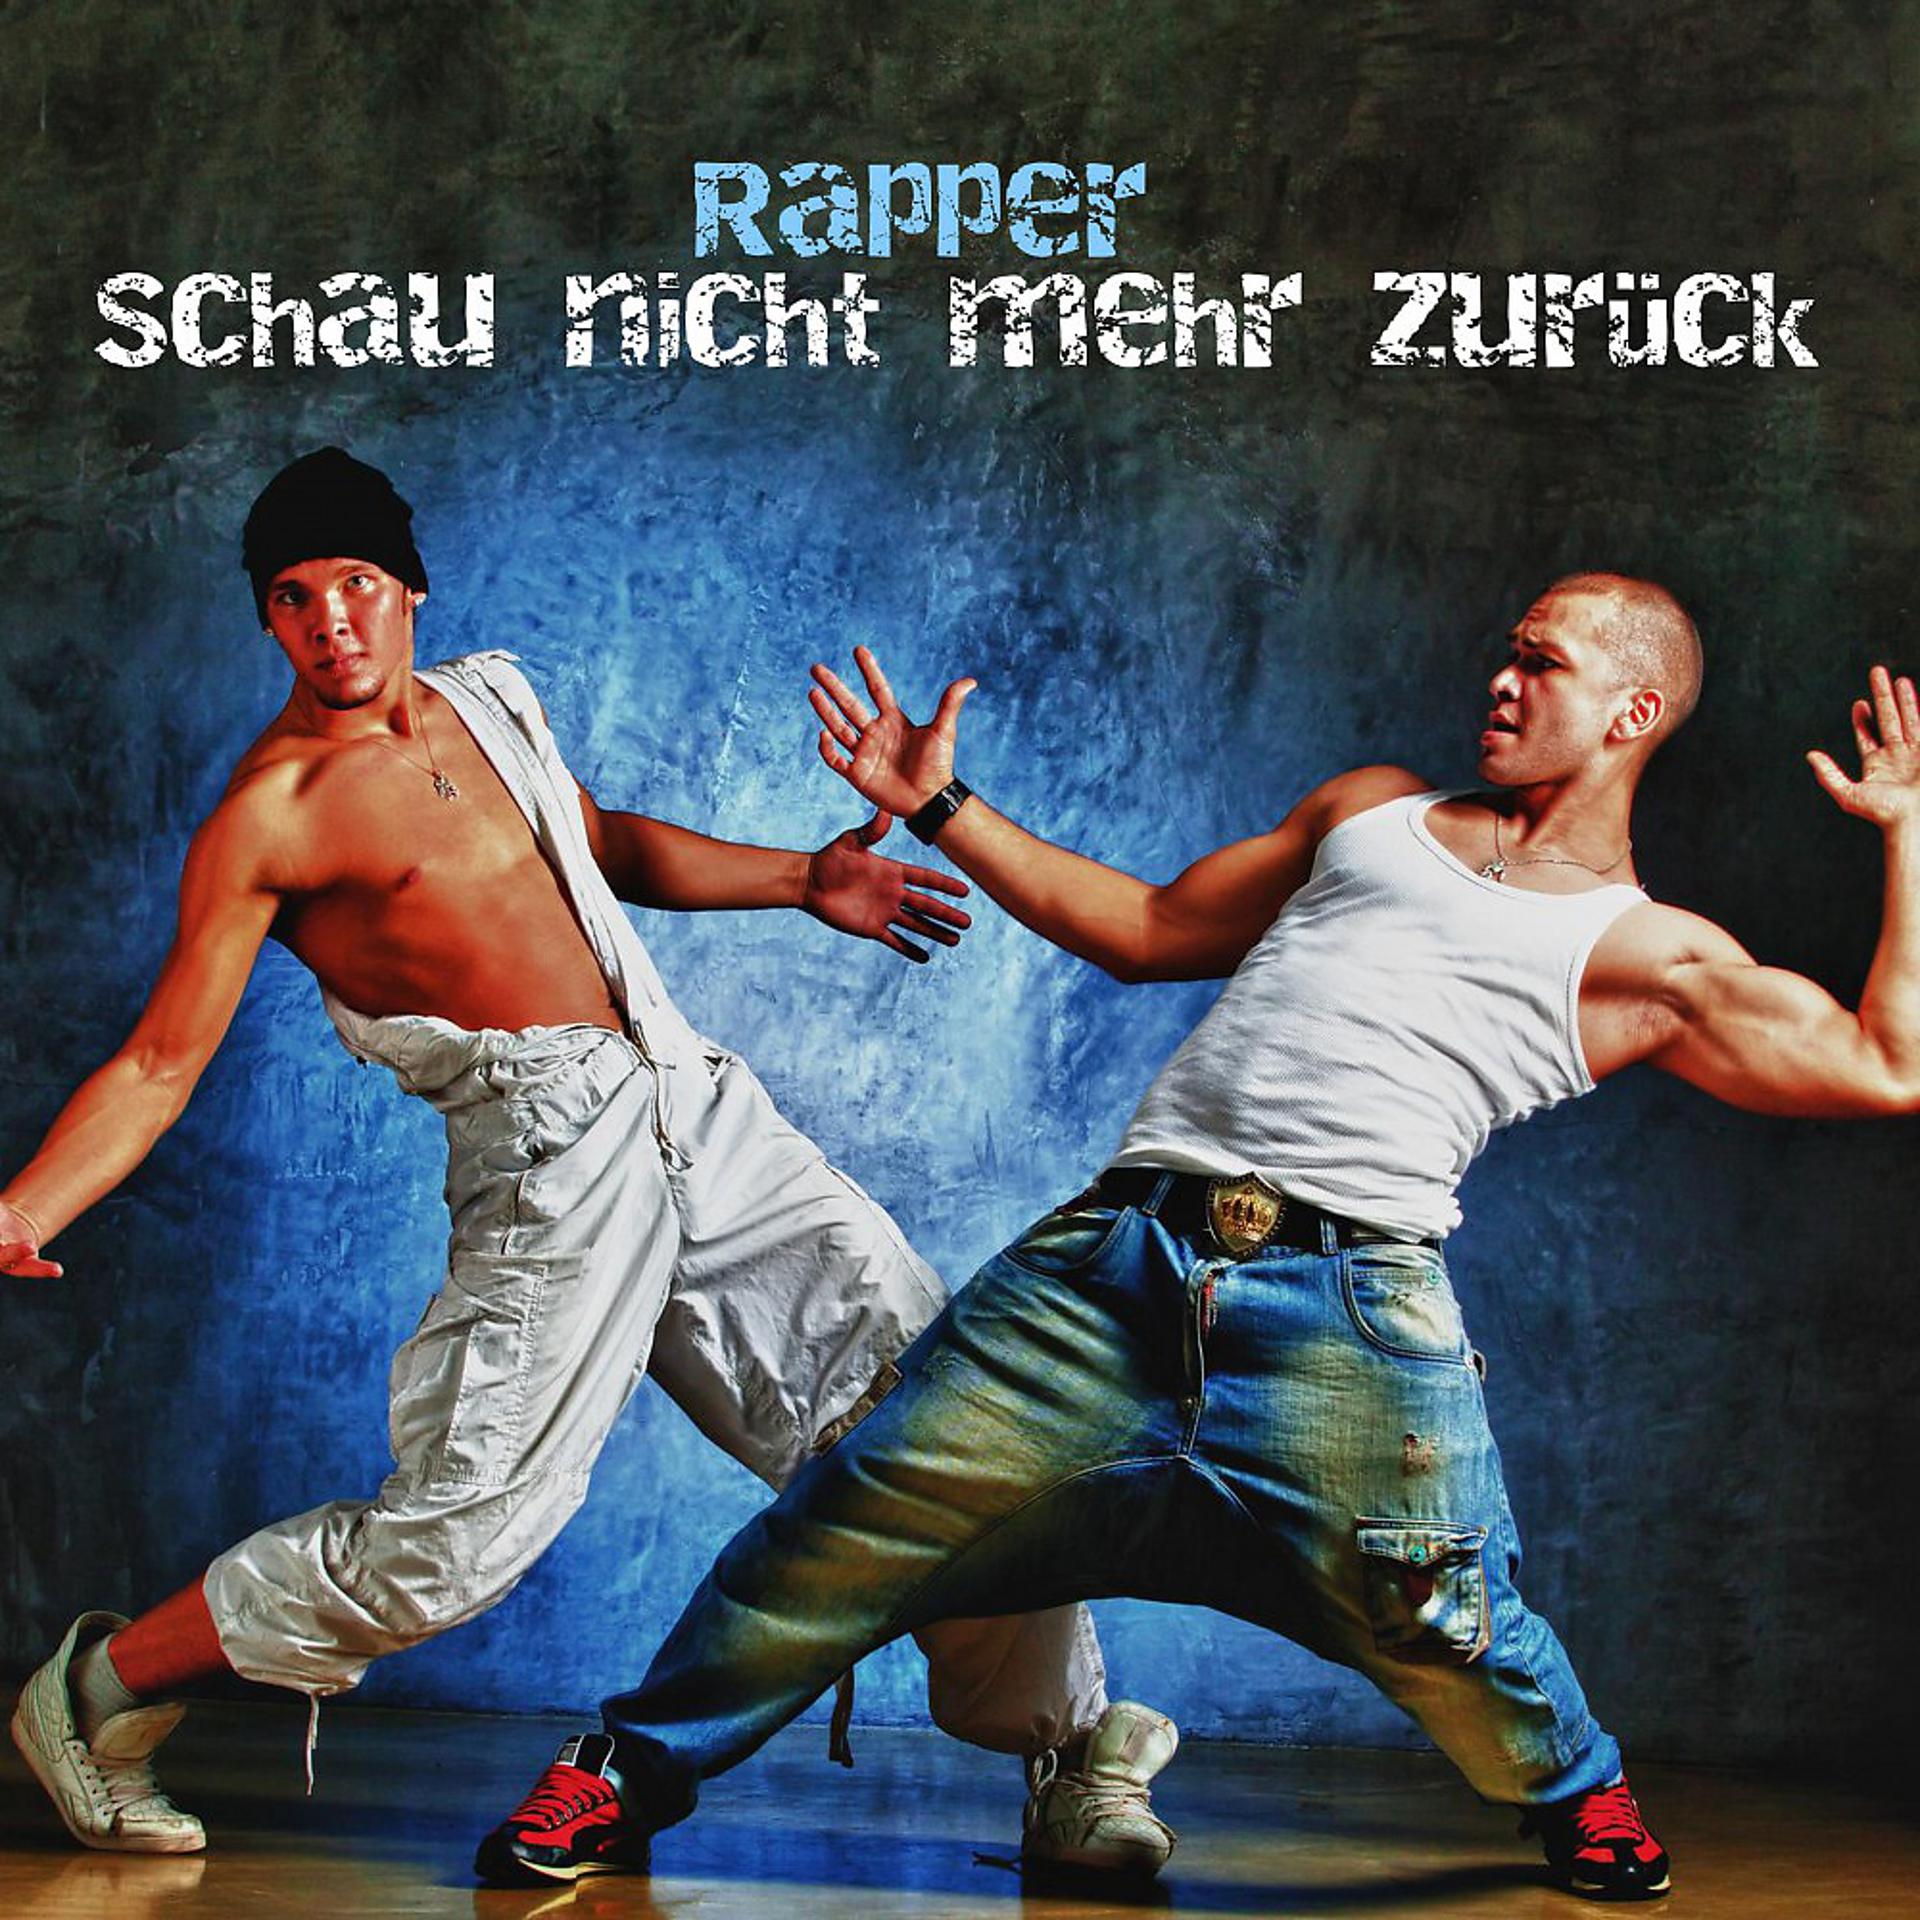 Постер альбома Schau nicht mehr zurück